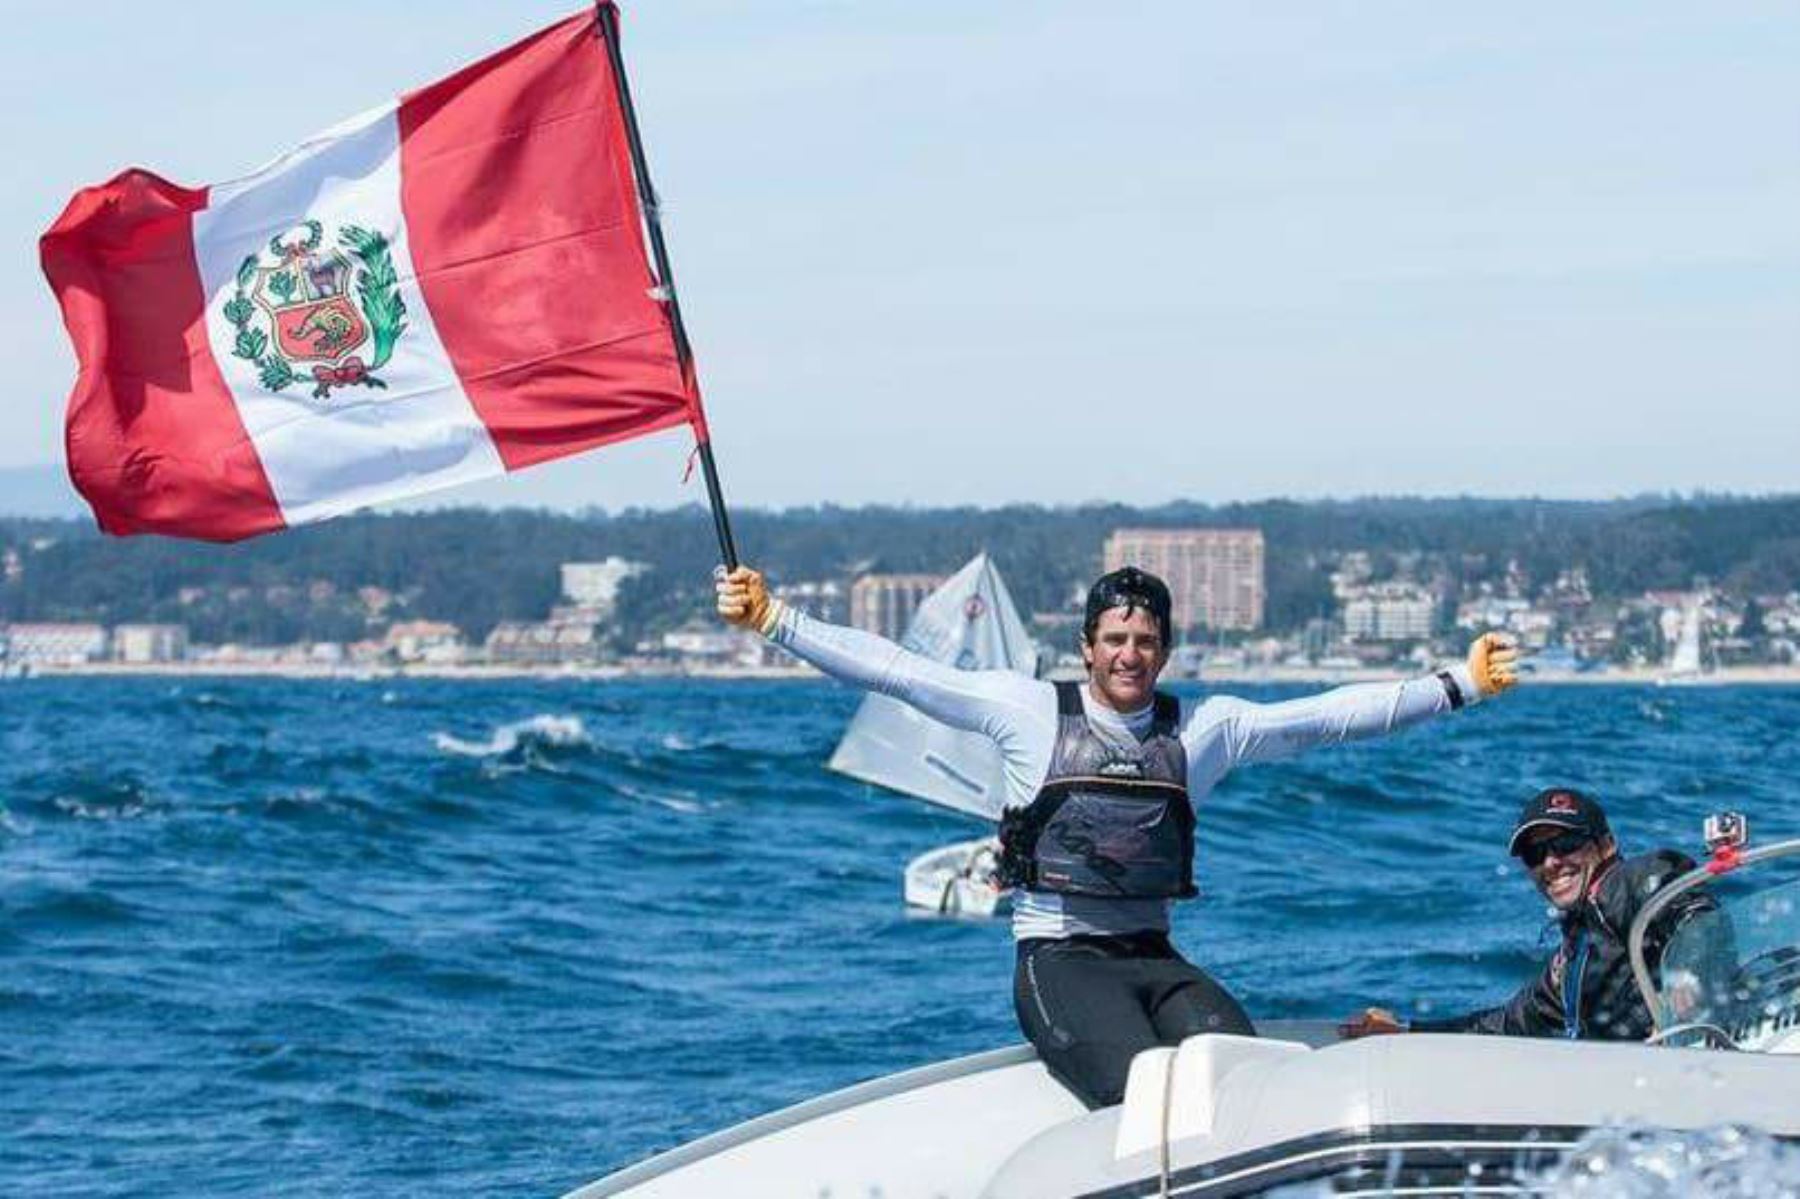 El velerista nacional Stefano Peschiera consigue la primera plaza para Perú en los Juegos Olímpicos. Foto: Facebook Stefano Peschiera